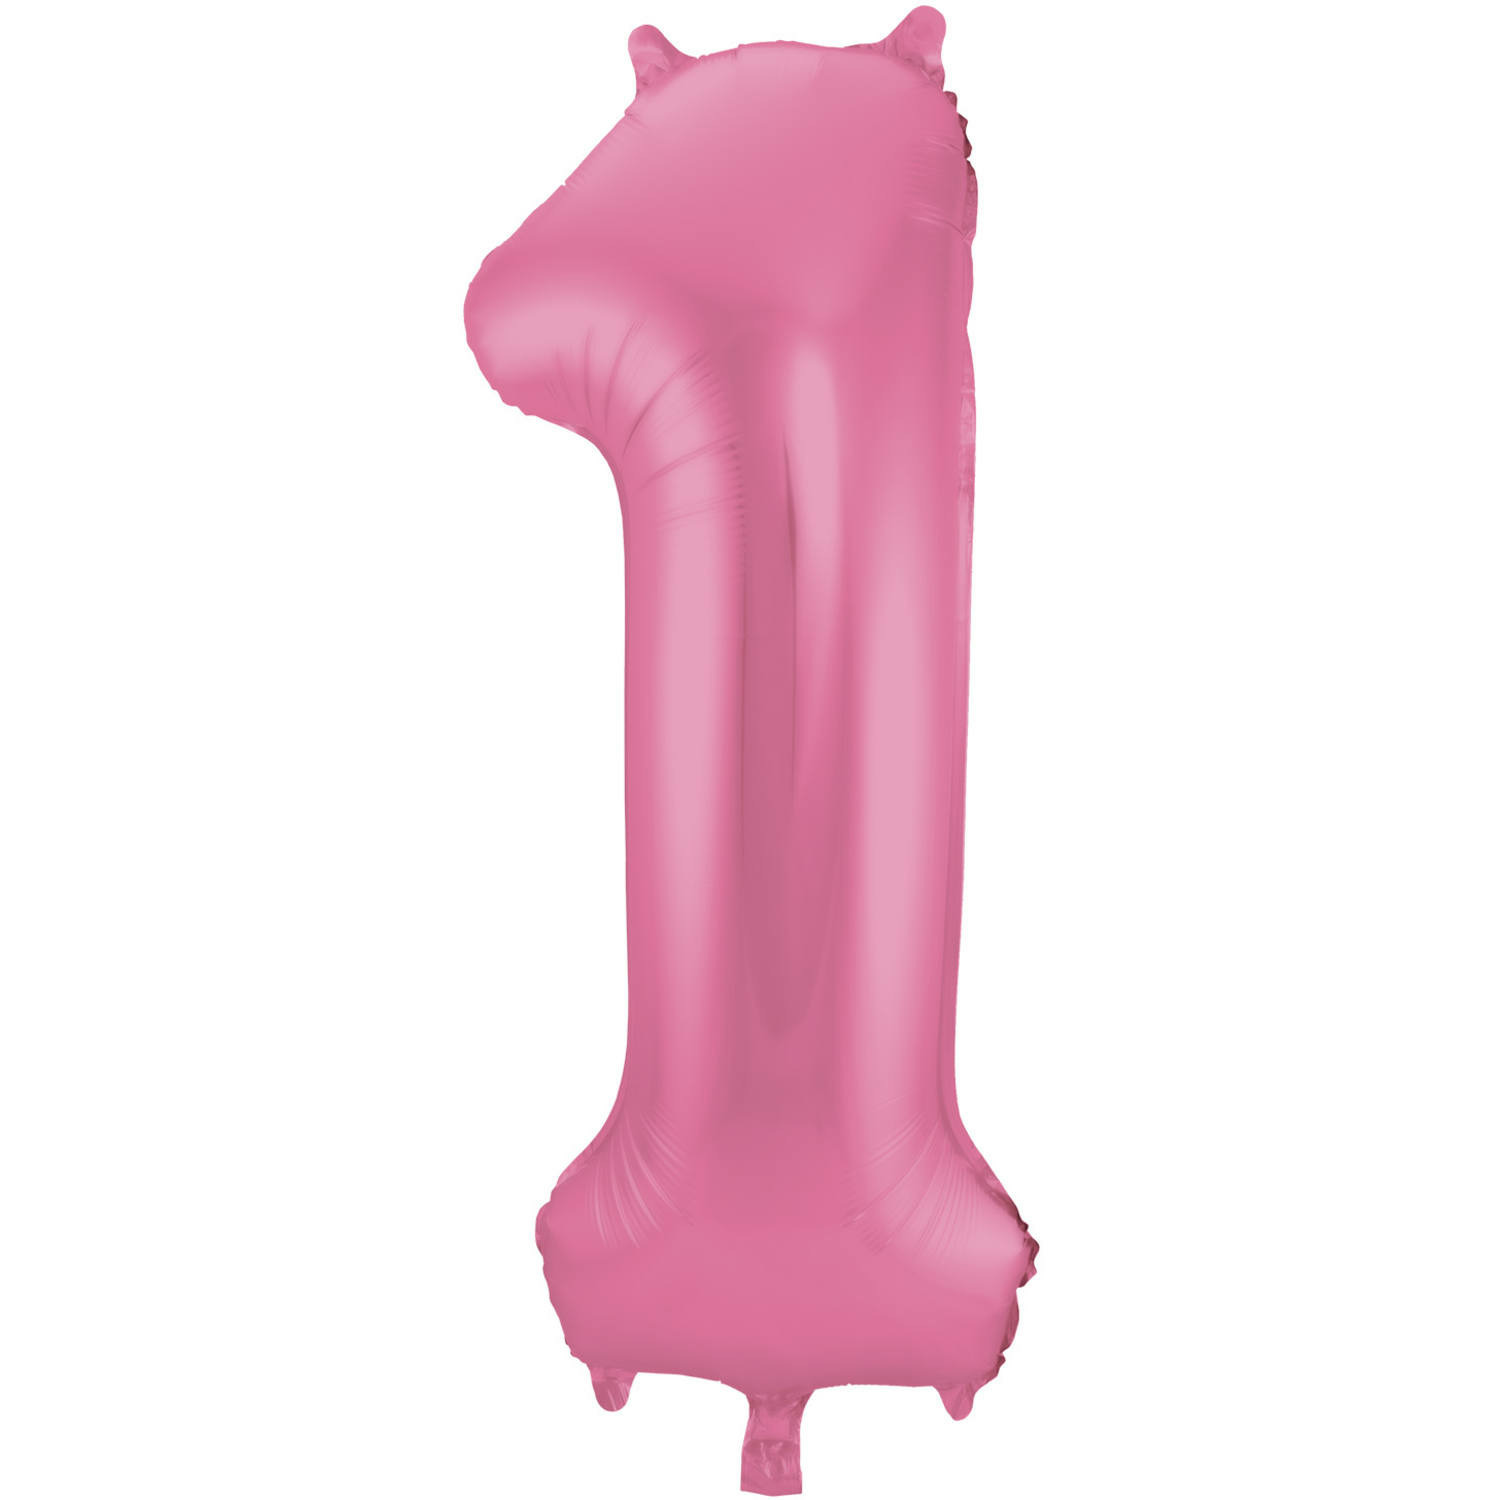 Folie ballon van cijfer 1 in het roze 86 cm